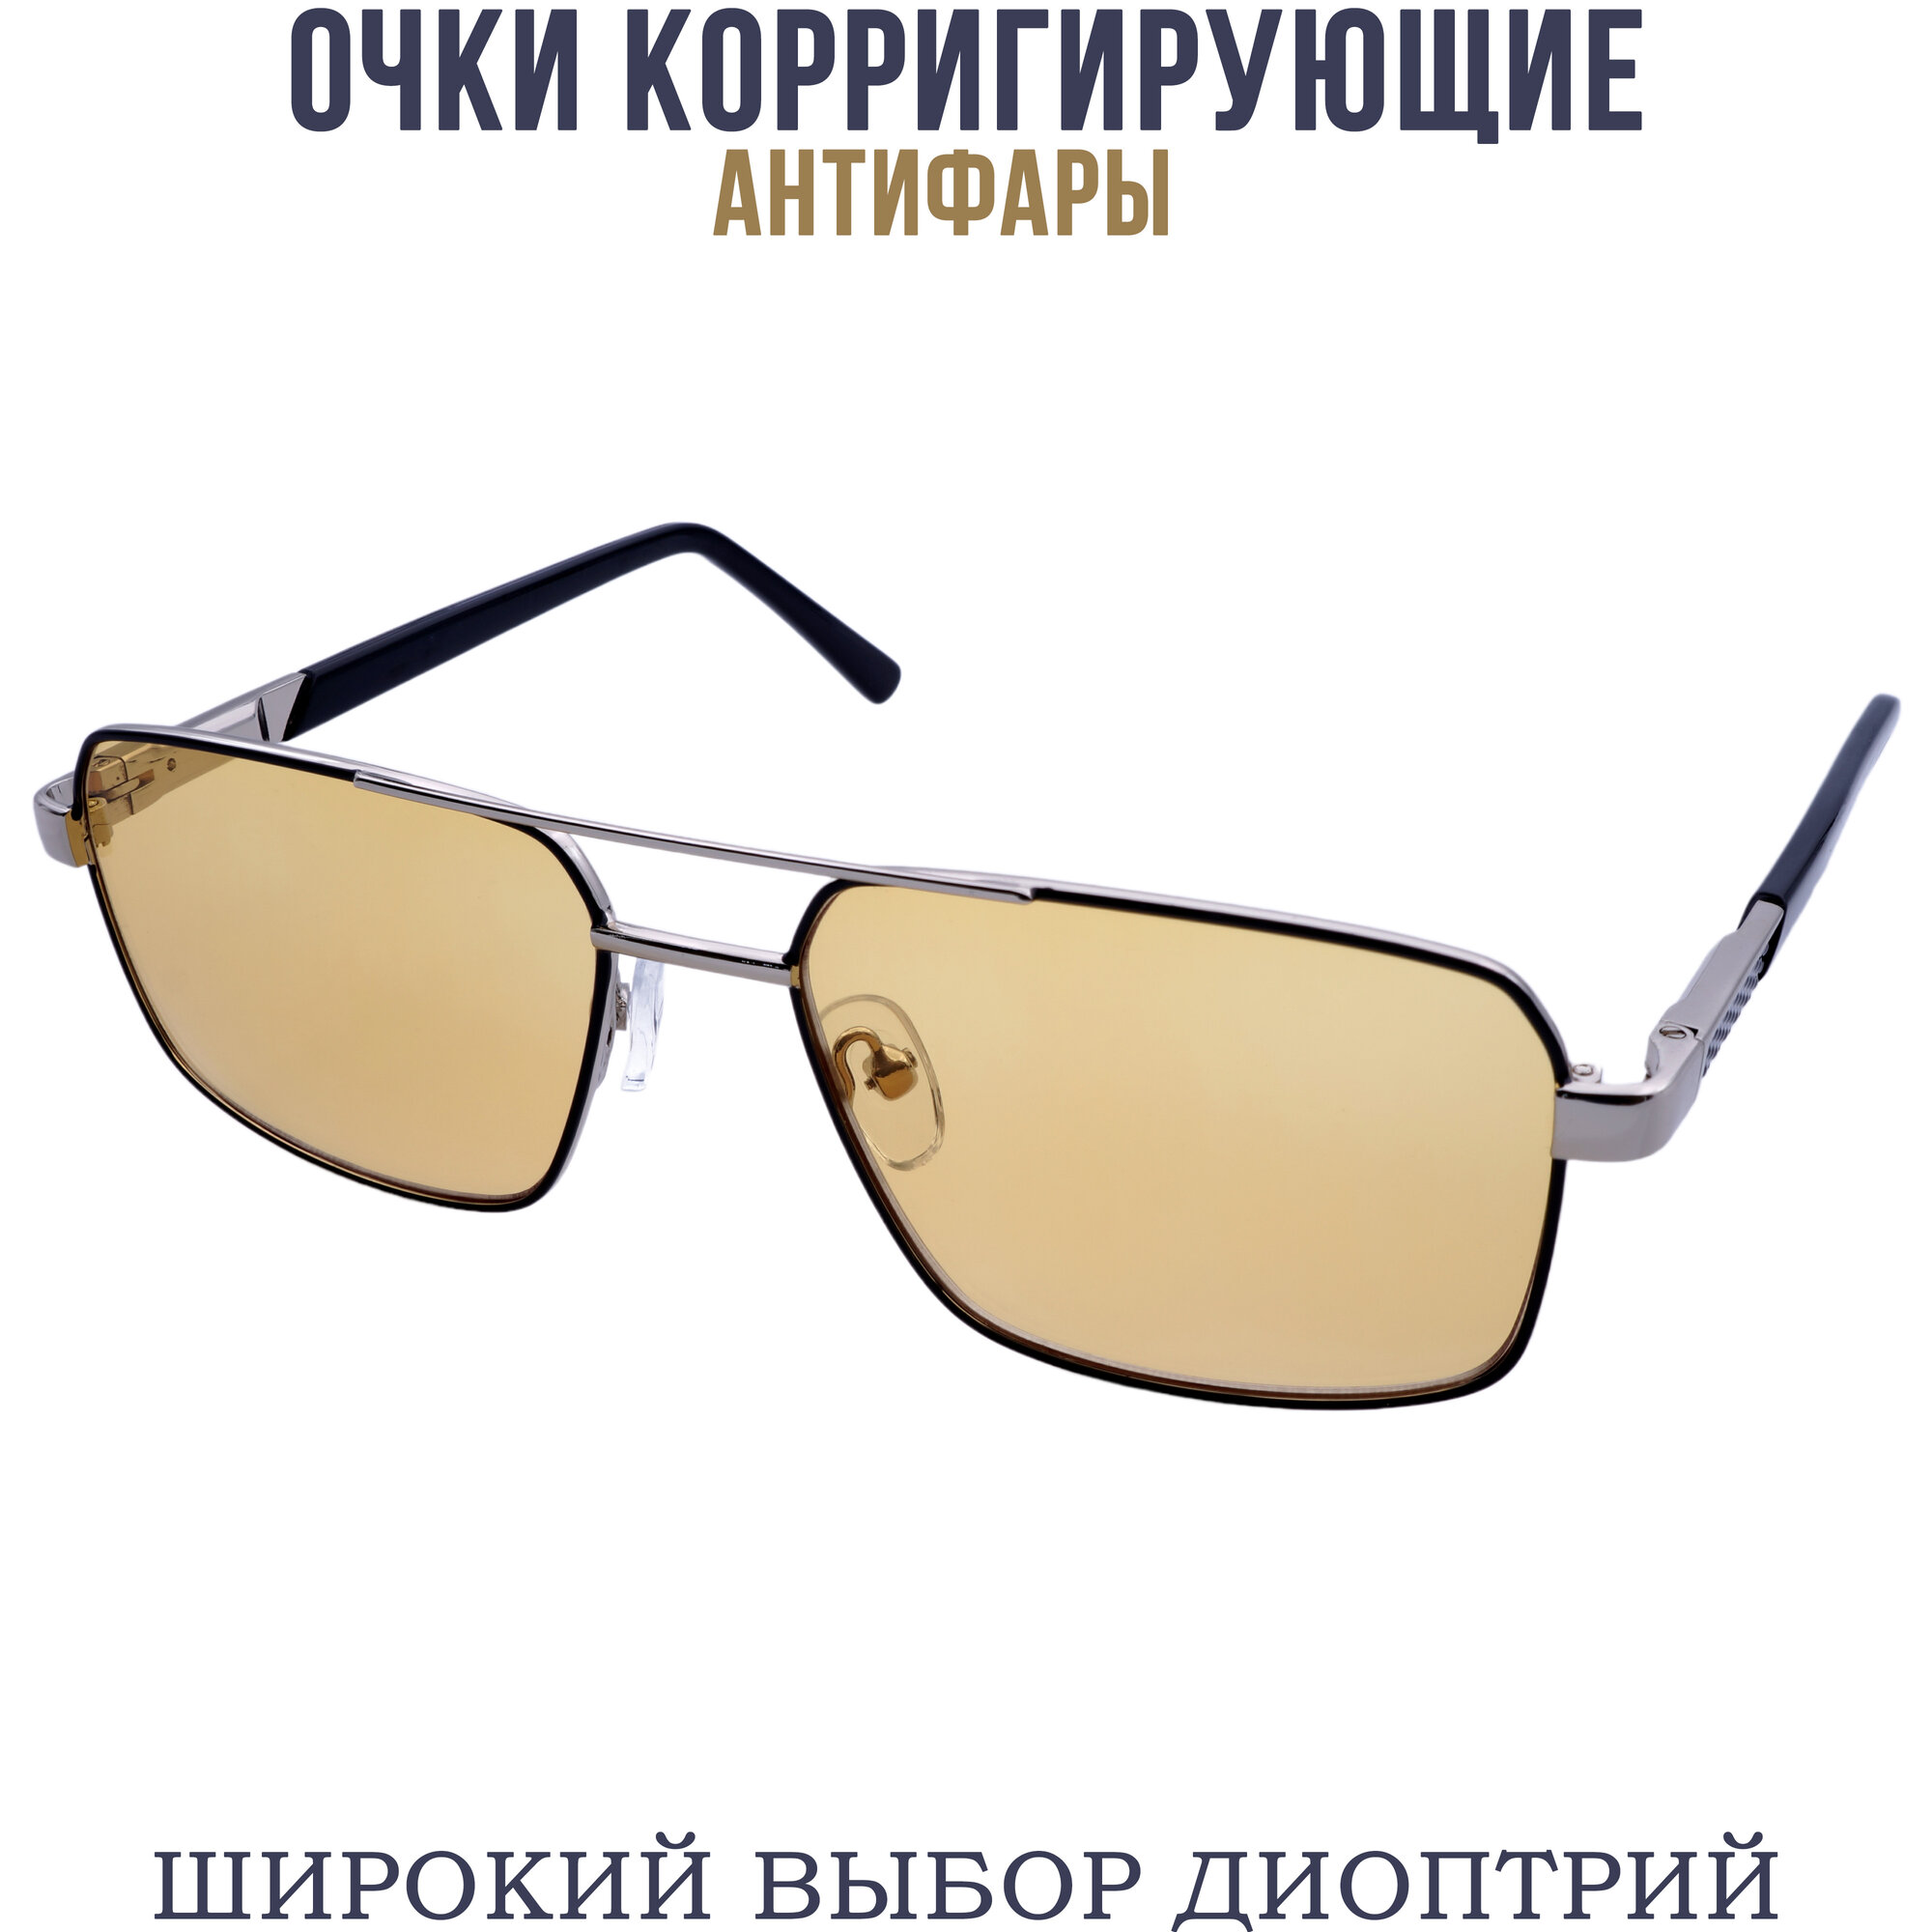 Готовые очки для зрения антифара с диоптриями pd62-64 бронзово-черный -1.00